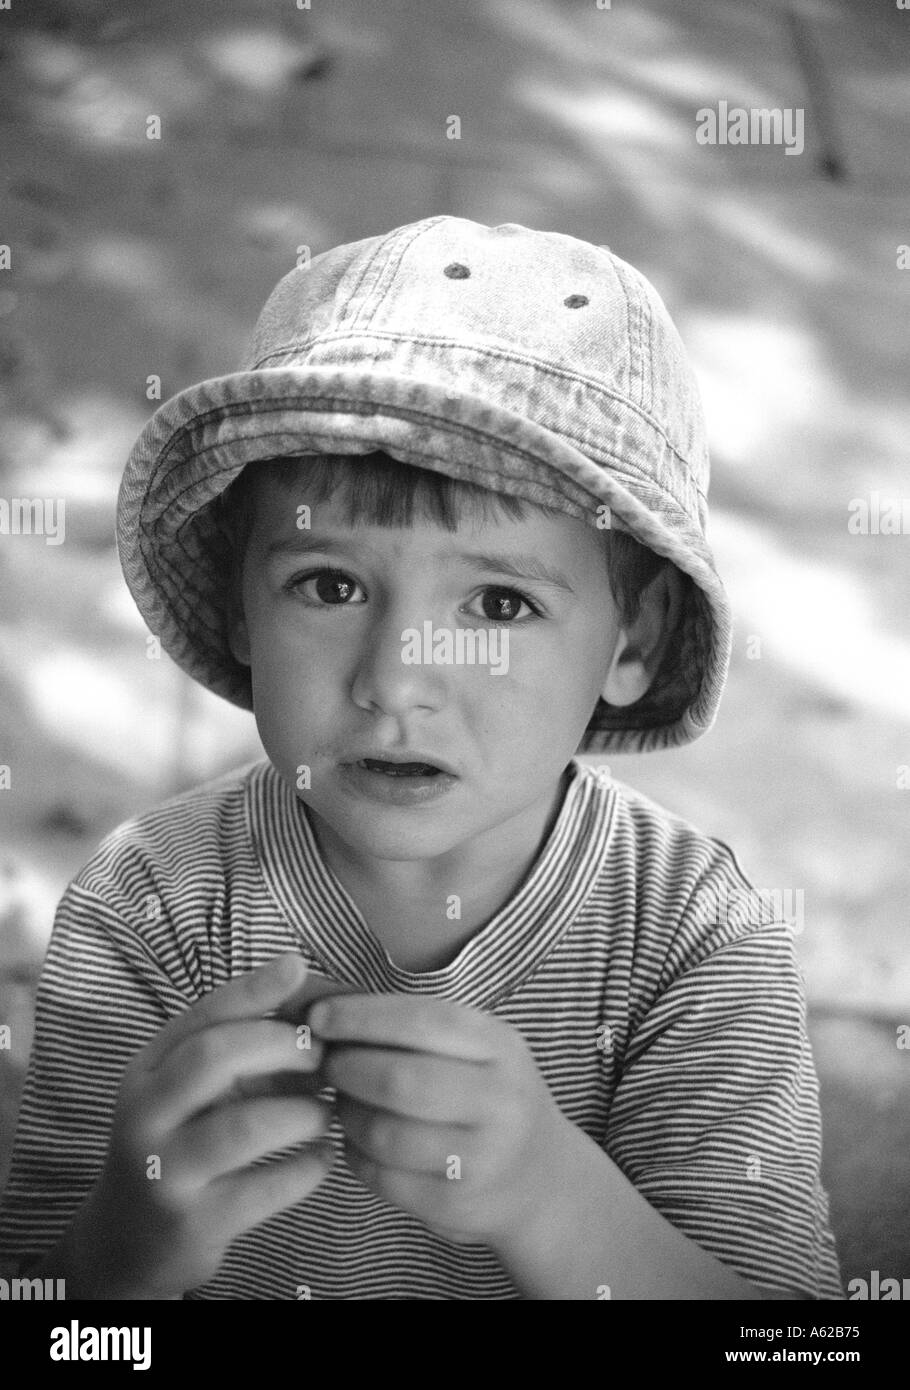 Fanciullo in hat e stripey t shirt cercando nervosamente alla fotocamera Foto Stock